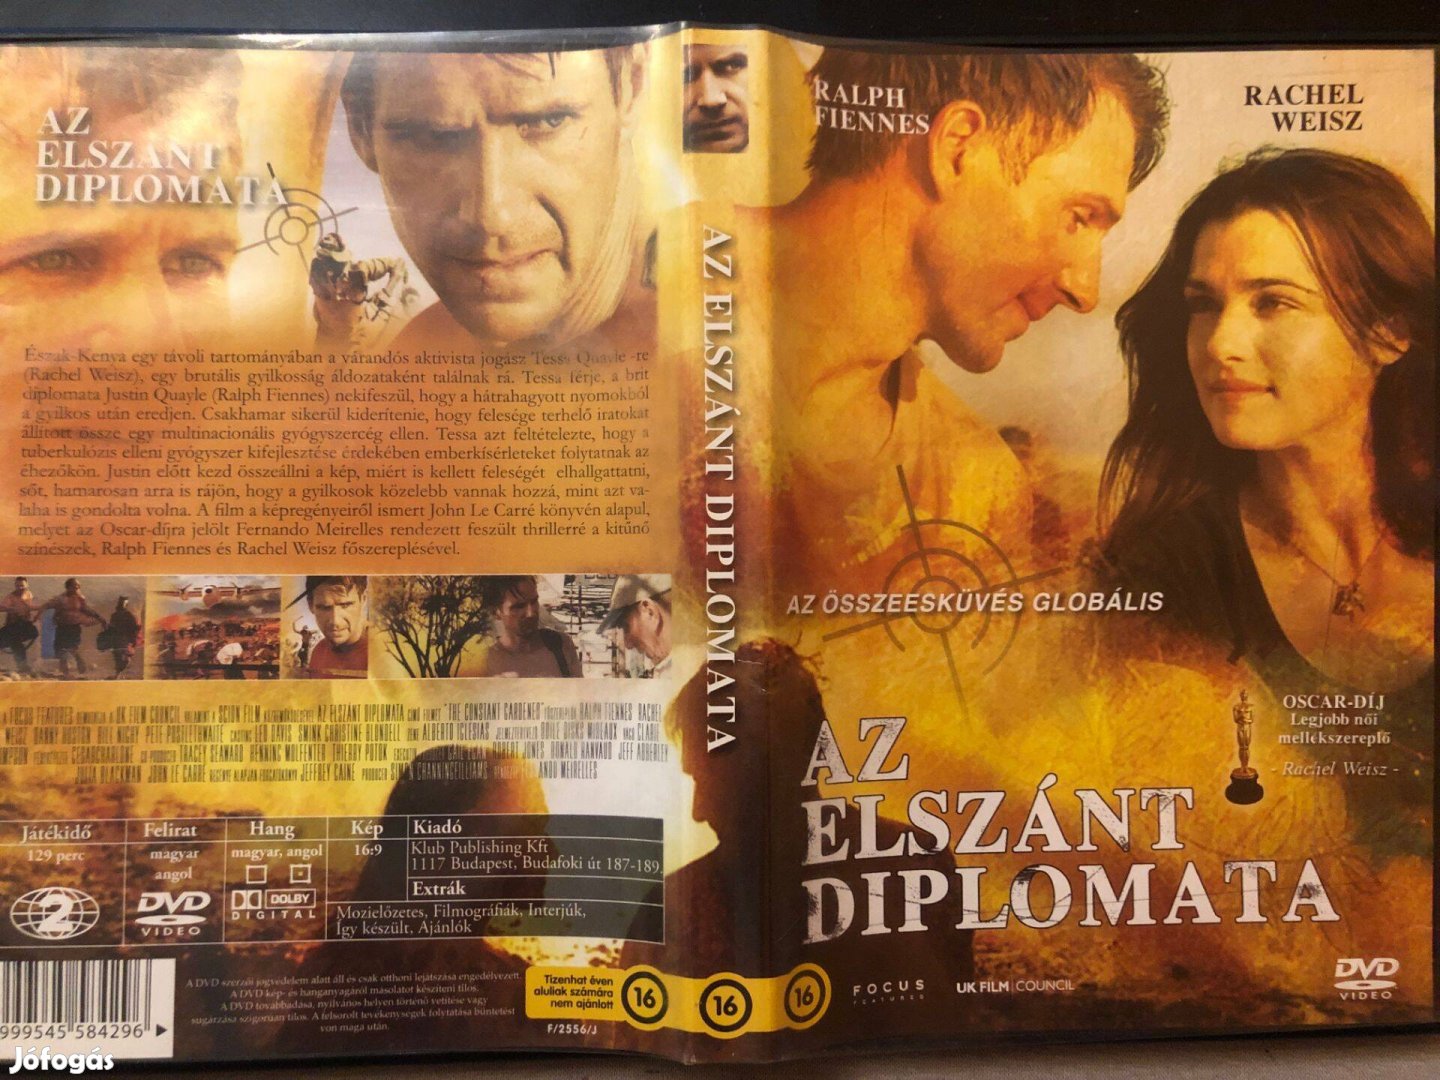 Az elszánt diplomata (karcmentes, Ralph Fiennes, Focus kiadás) DVD